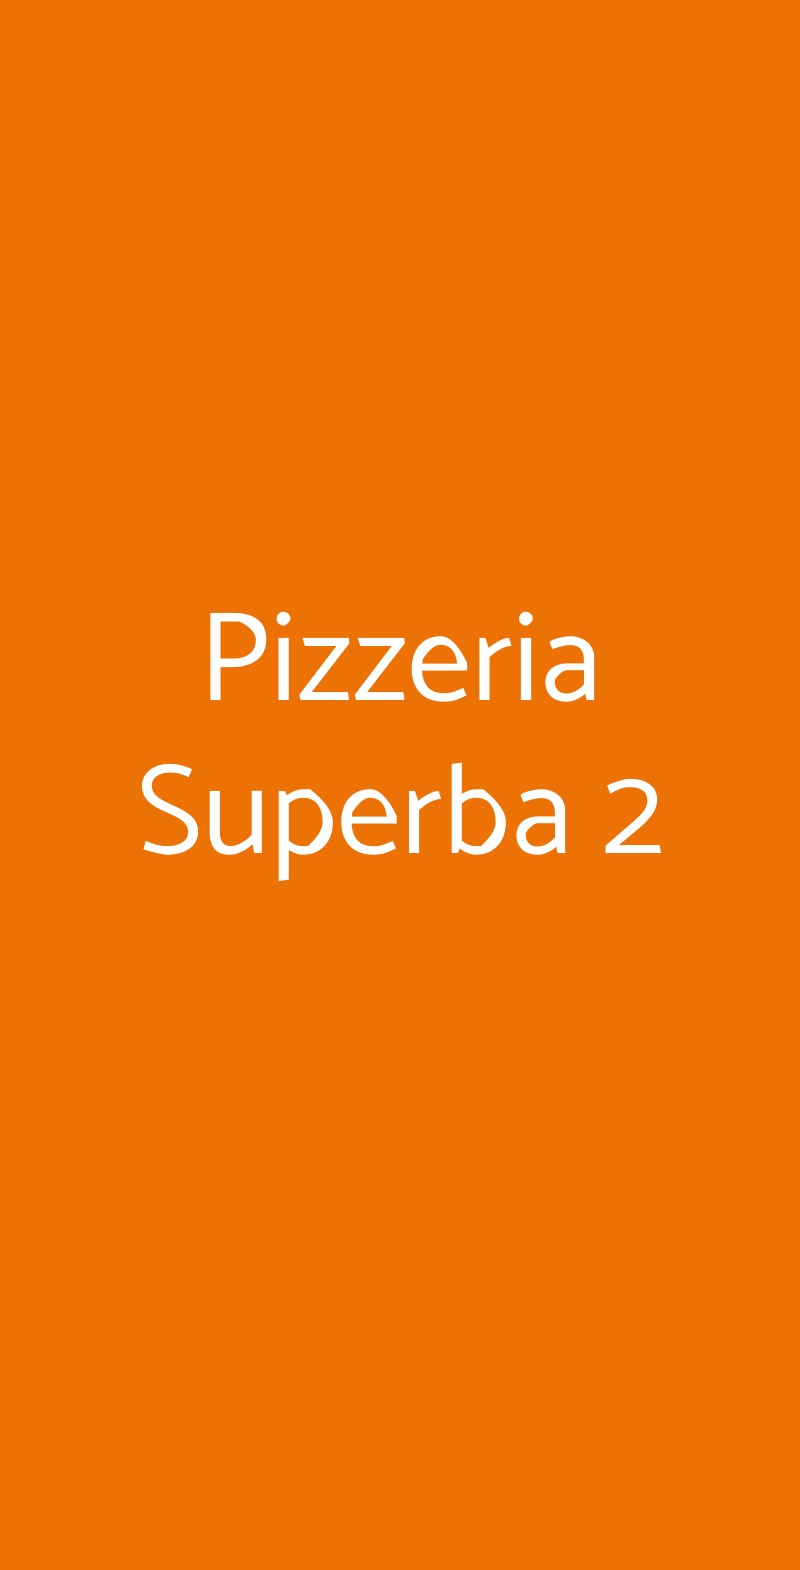 Pizzeria Superba 2 Genova menù 1 pagina